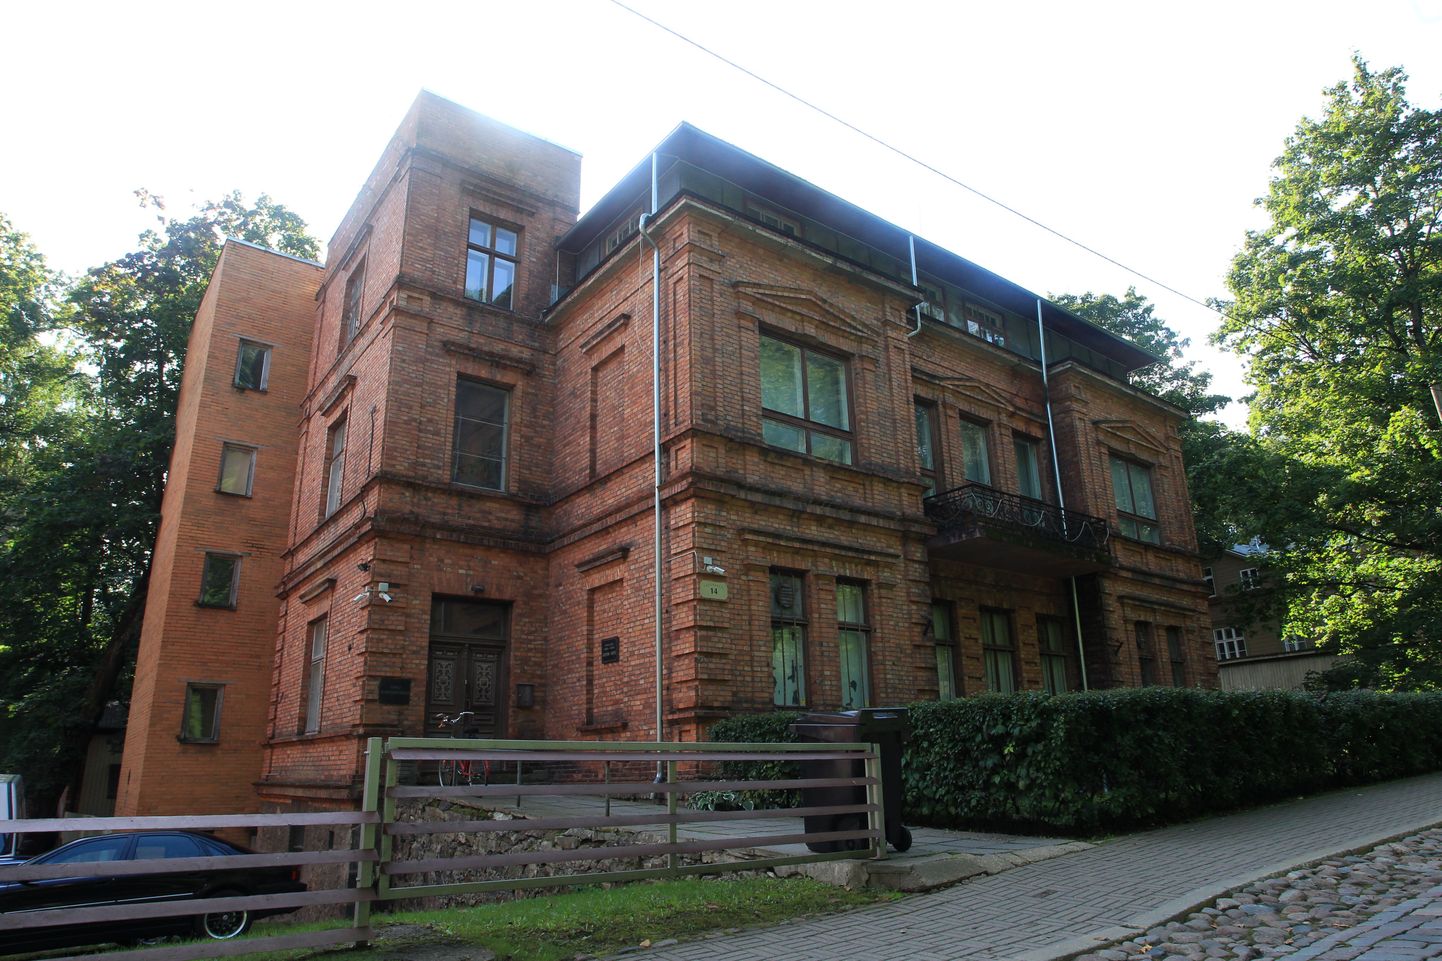 Pildil Tartu kunstimuuseumi maja aadressil Vallikraavi 14.